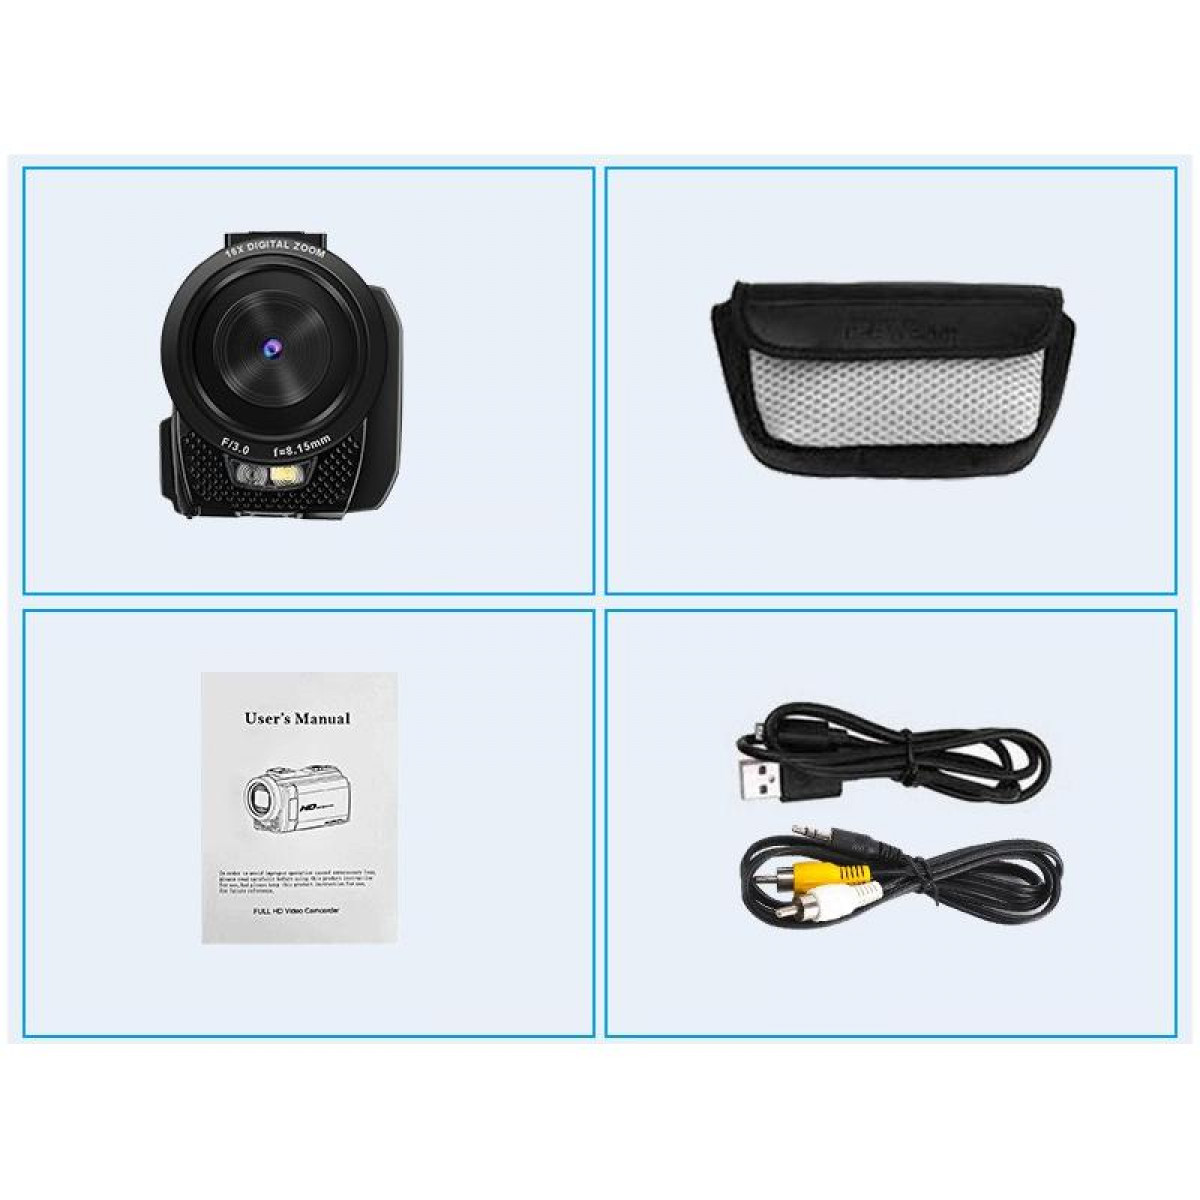 24MP Digitalkamera Camcorder 16-facher opt. INF / drehbarer Zoom / und Zoom 1080P LCD-Bildschirm